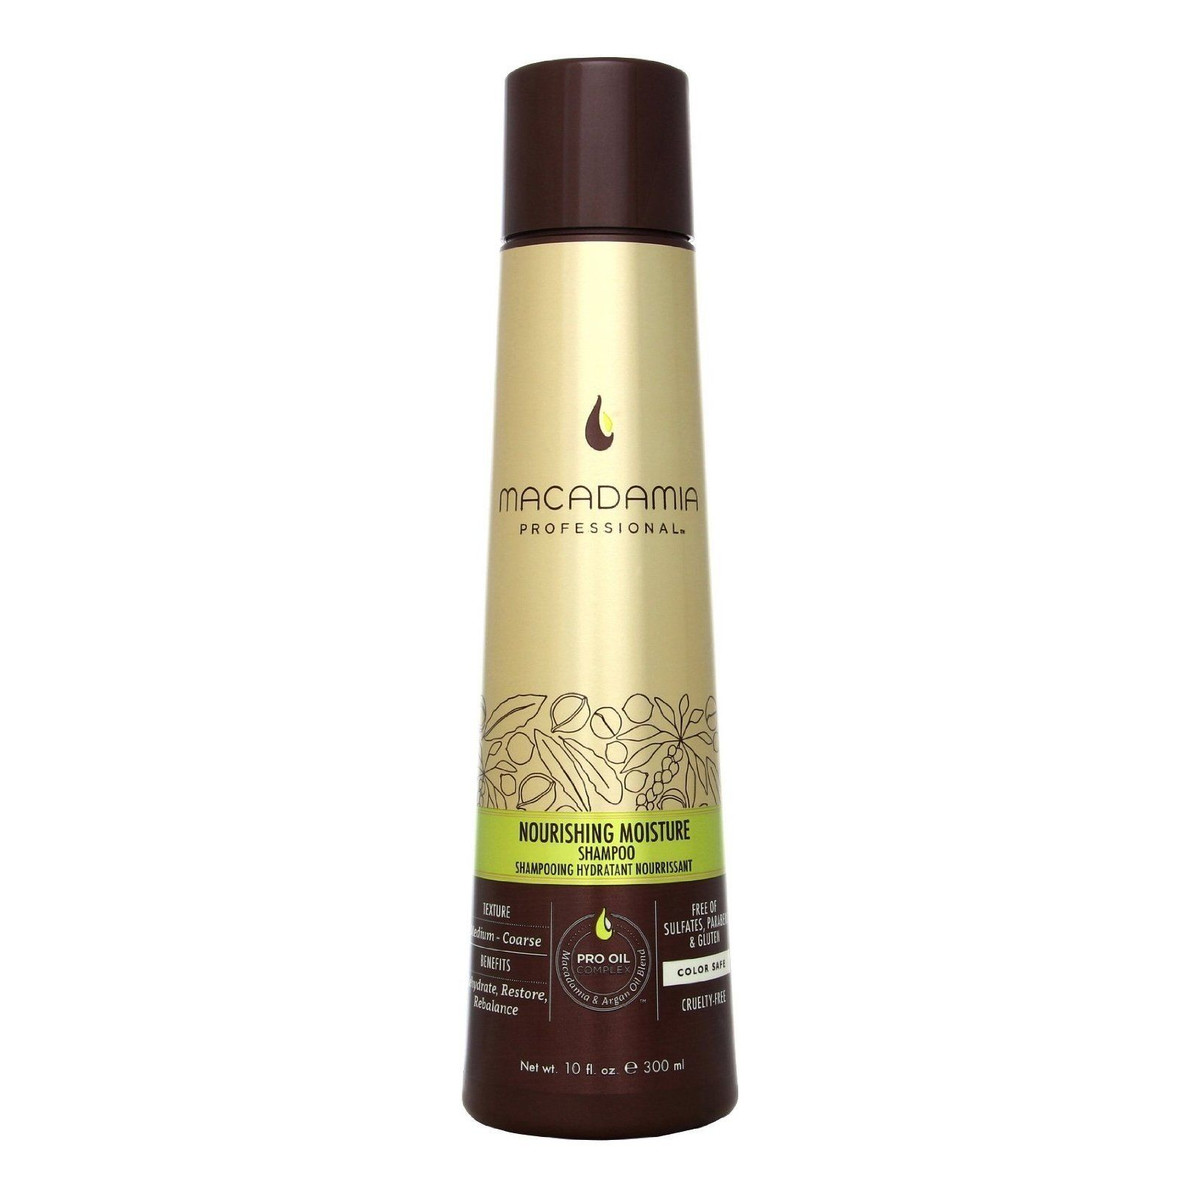 Macadamia Professional Nourishing Moisture szampon do włosów normalnych 300ml